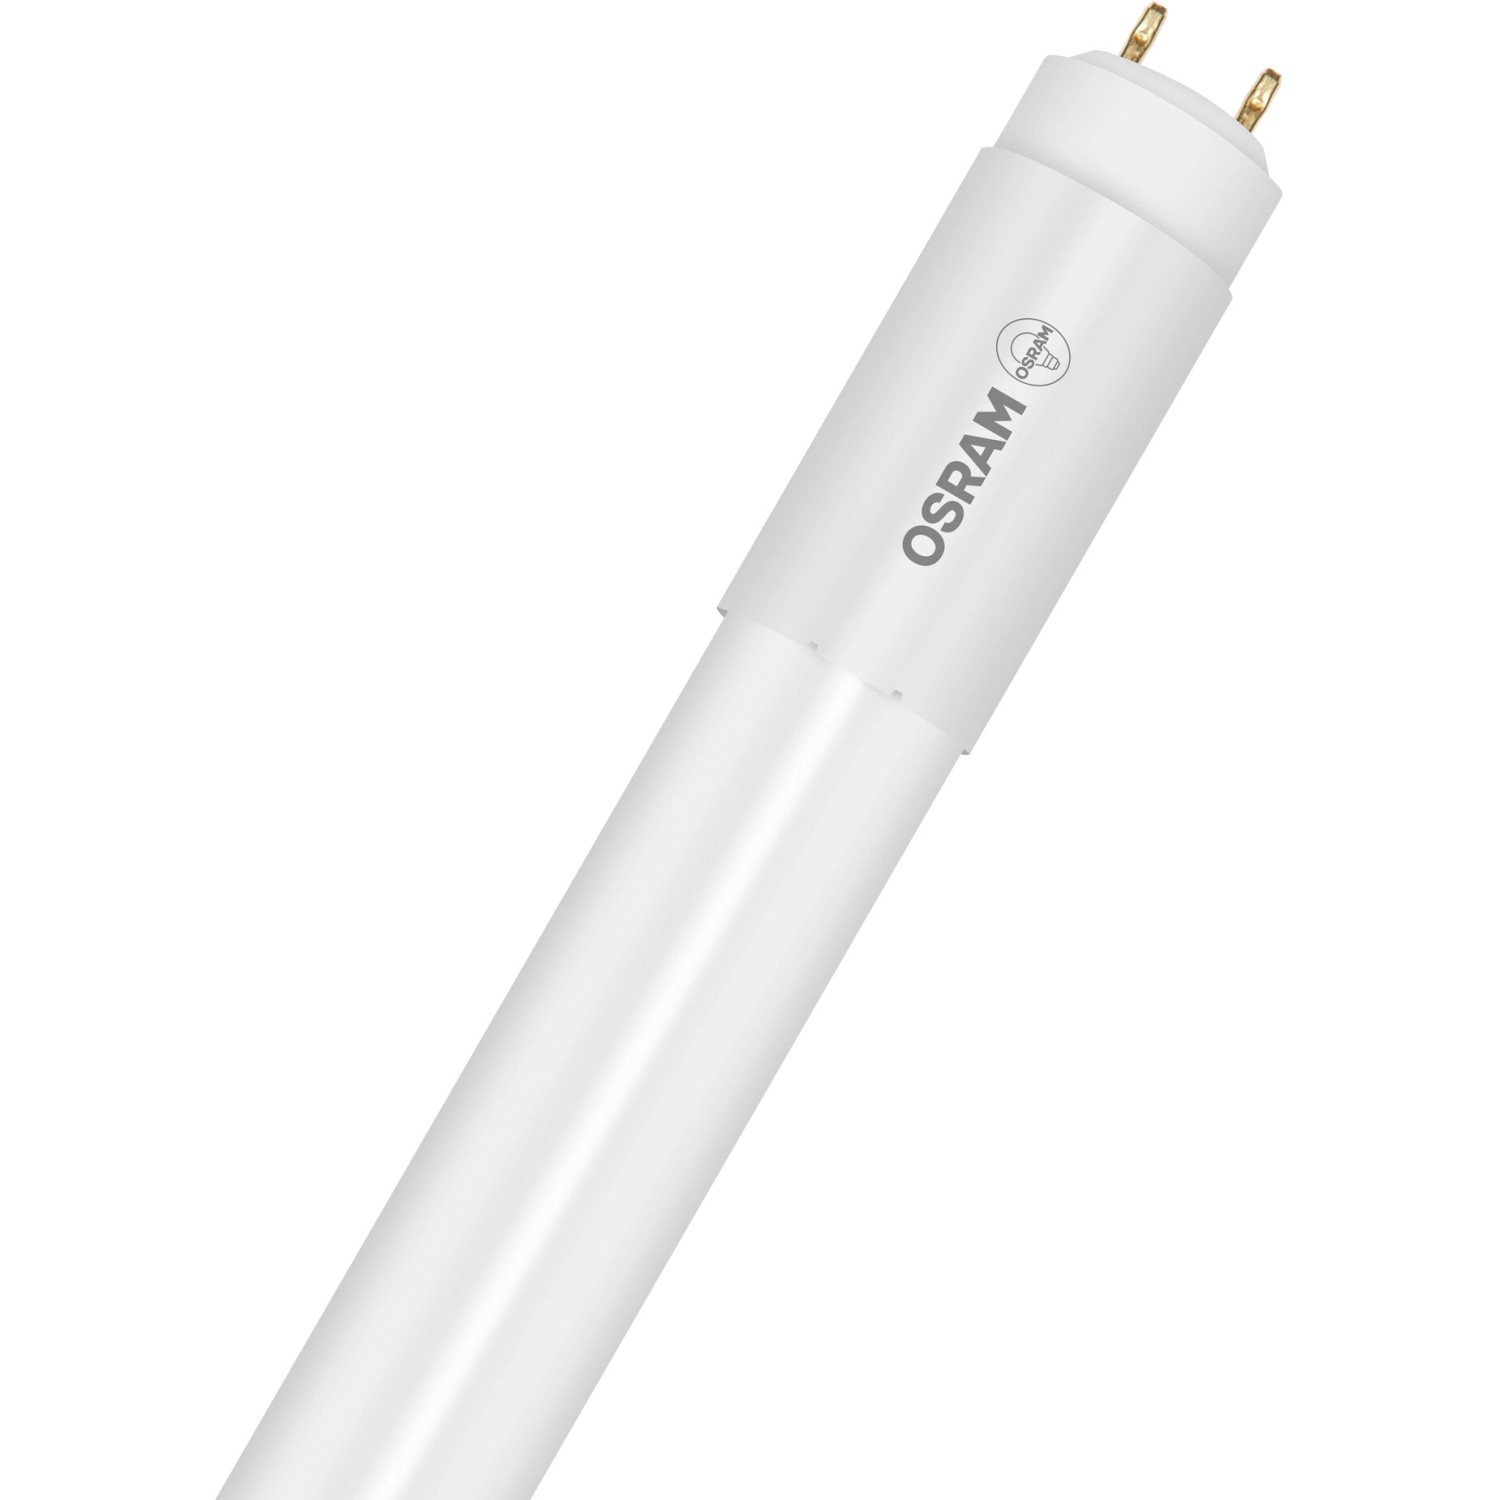 Osram LED-Leuchtstofflampen G13 Röhre 24 W 2550 lm 151,3 cm x 2,8 cm Warmweiß